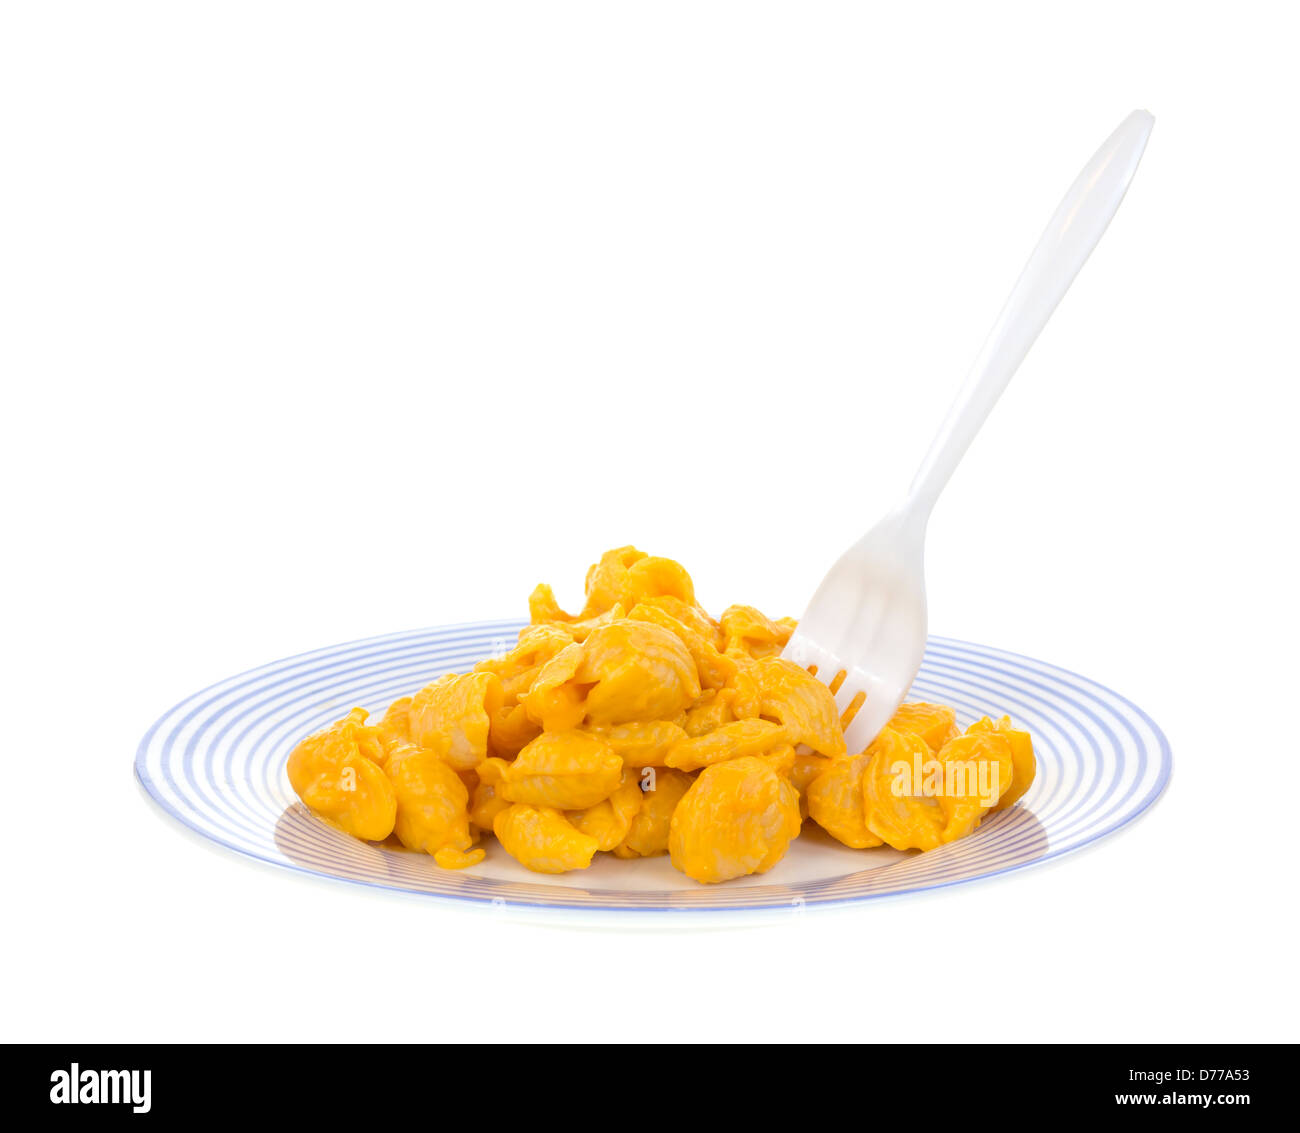 Eine blau gestreifte Platte mit einer Portion Nudeln Muscheln mit Käse-Sauce und einer Gabel in das Essen stecken. Stockfoto